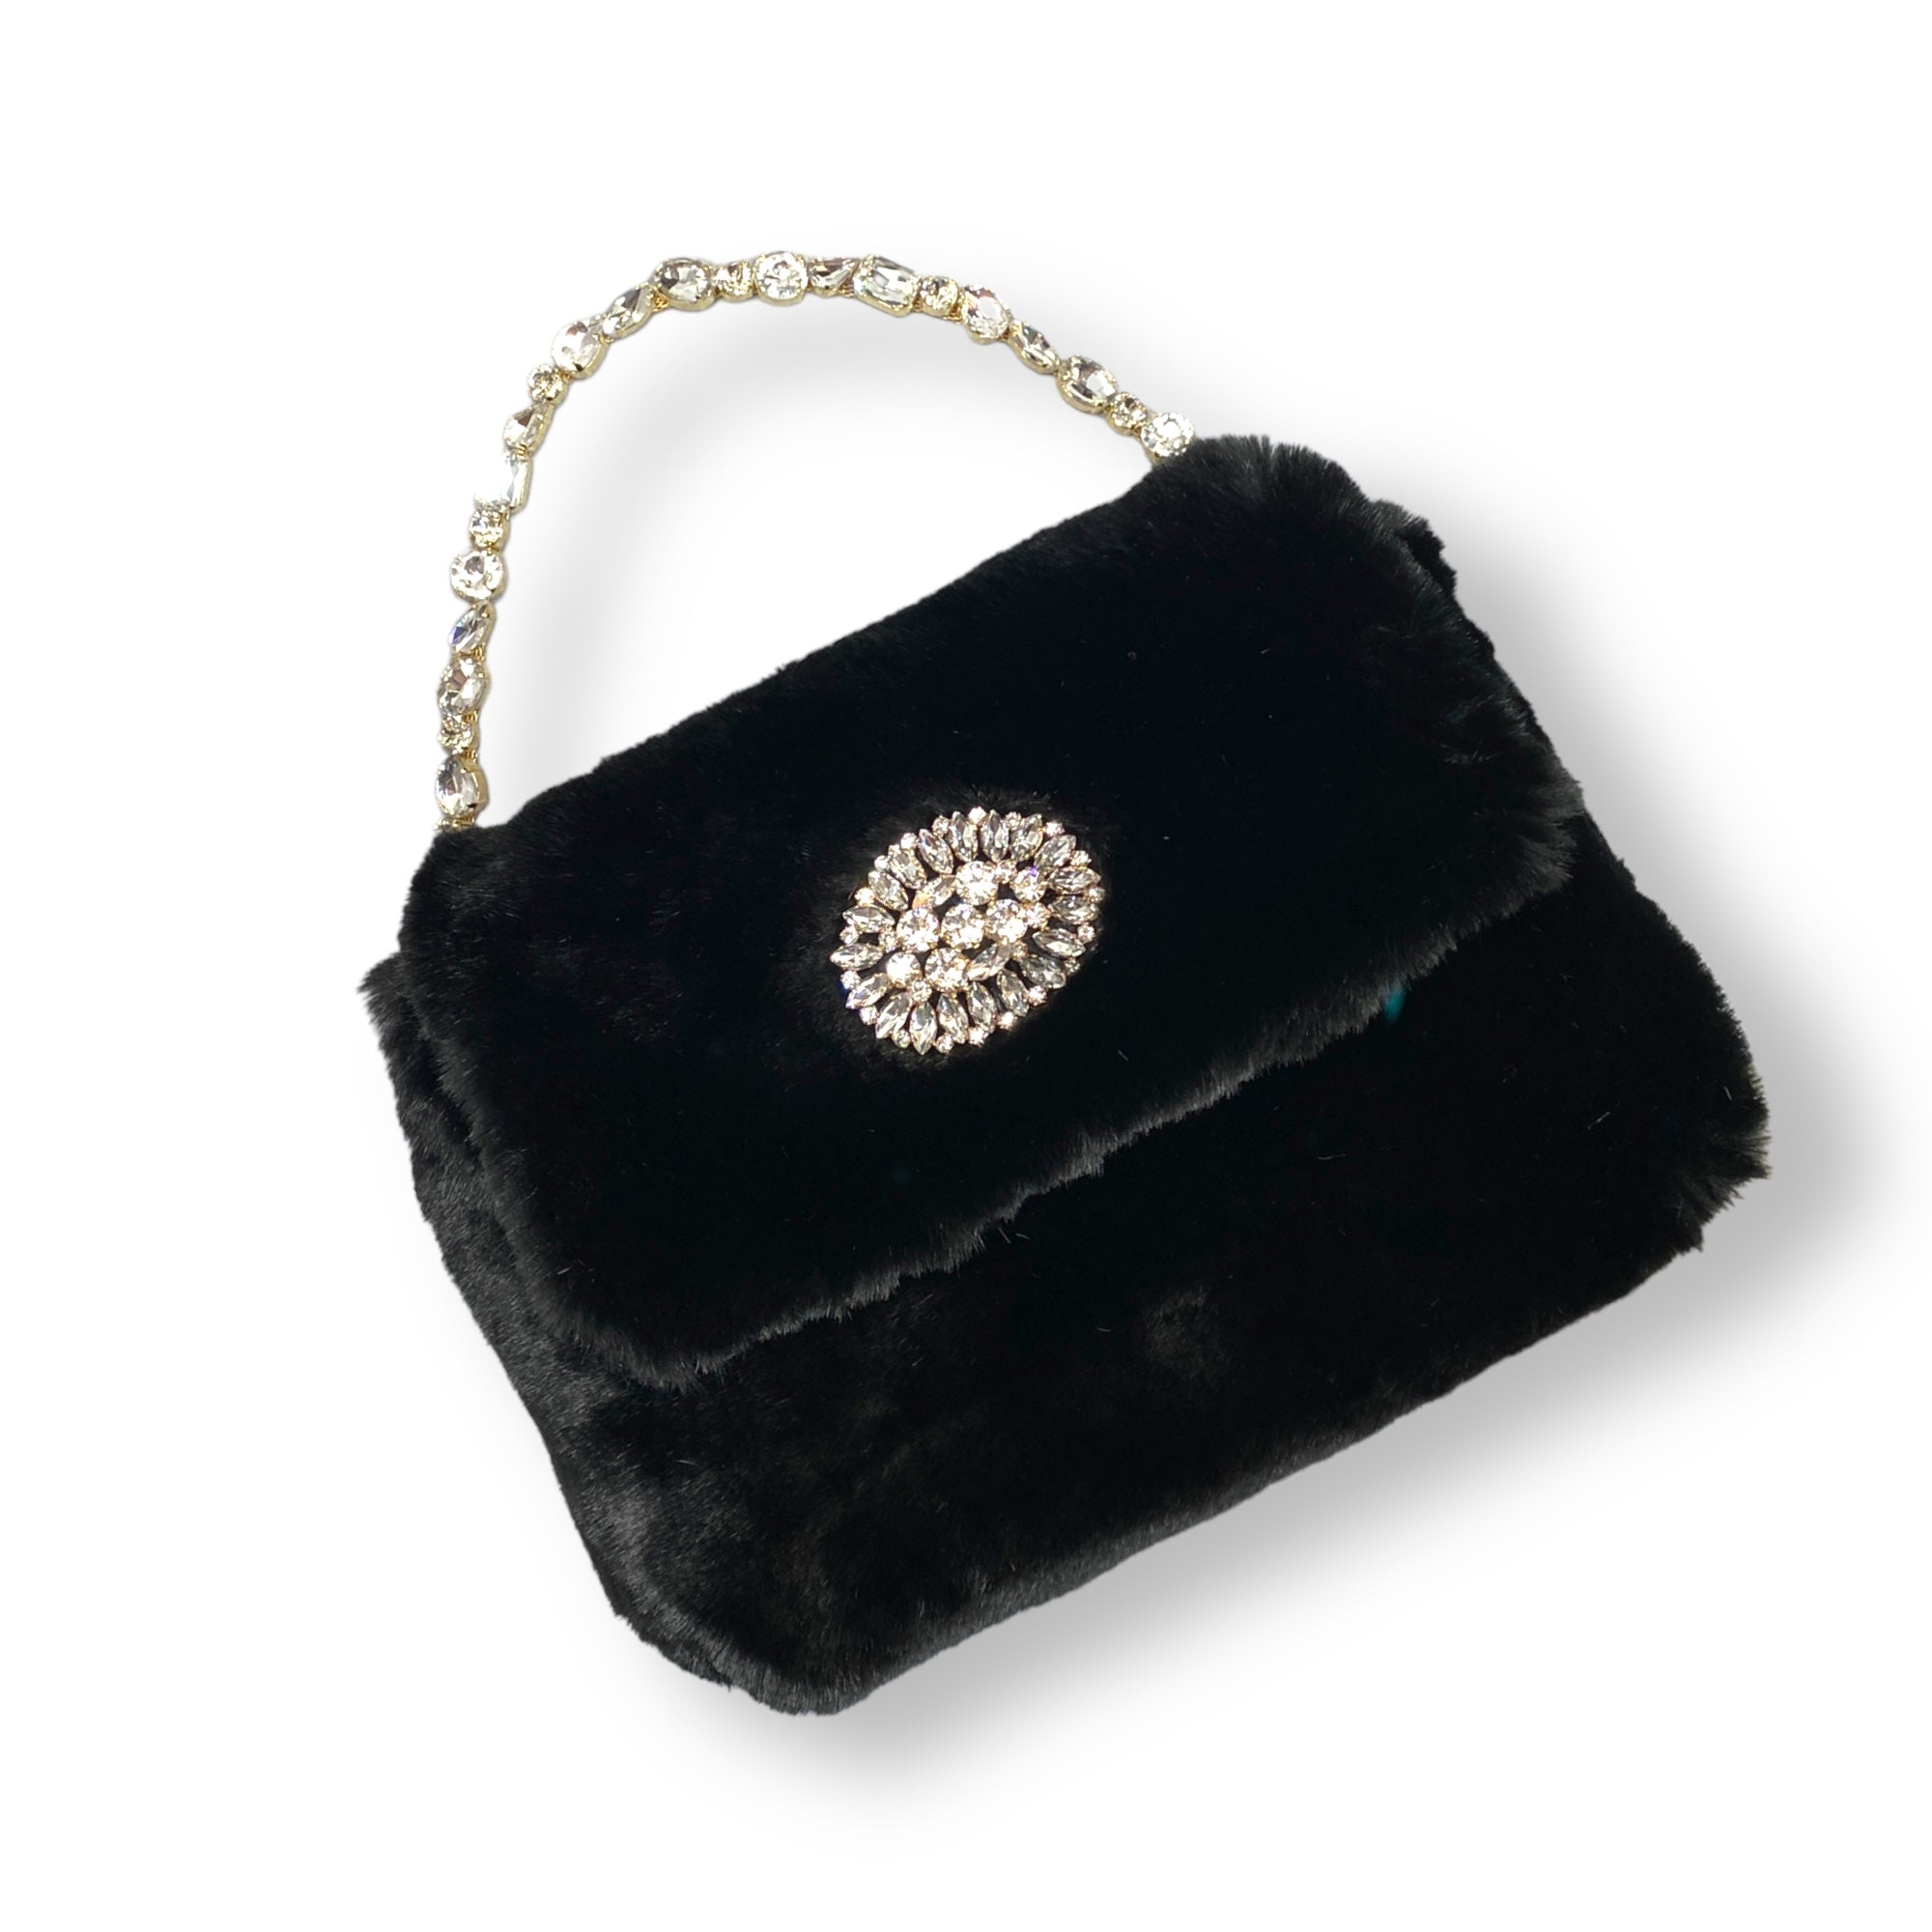 Victoria  handbag in black faux fur